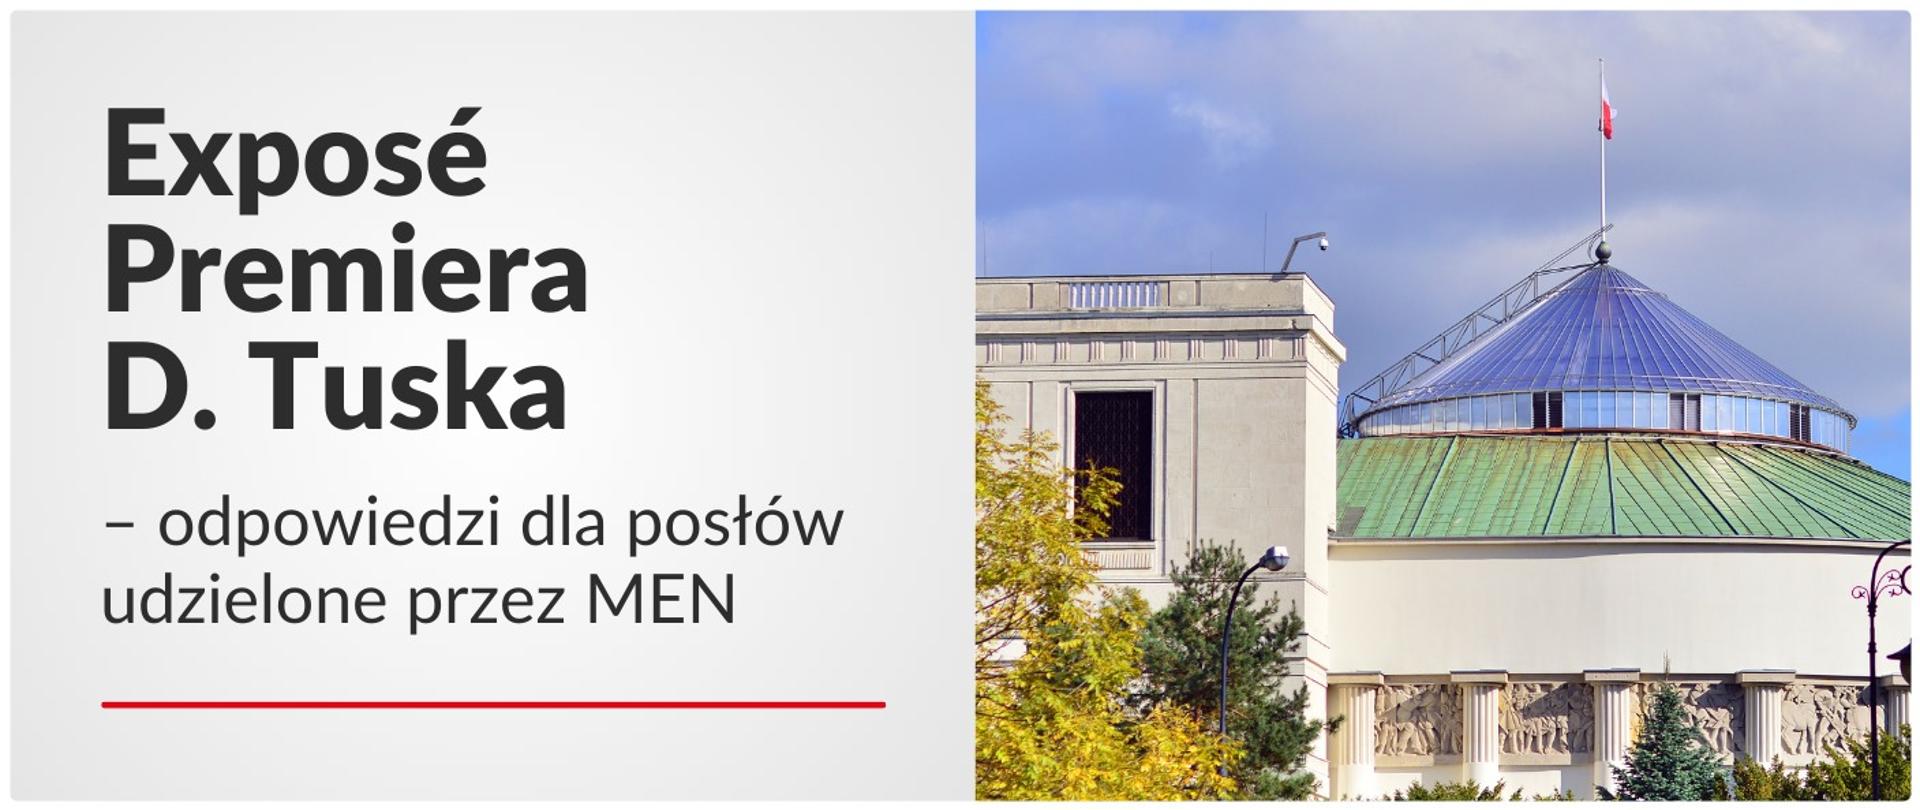 Exposé Premiera D. Tuska – odpowiedzi MEN dla posłów 